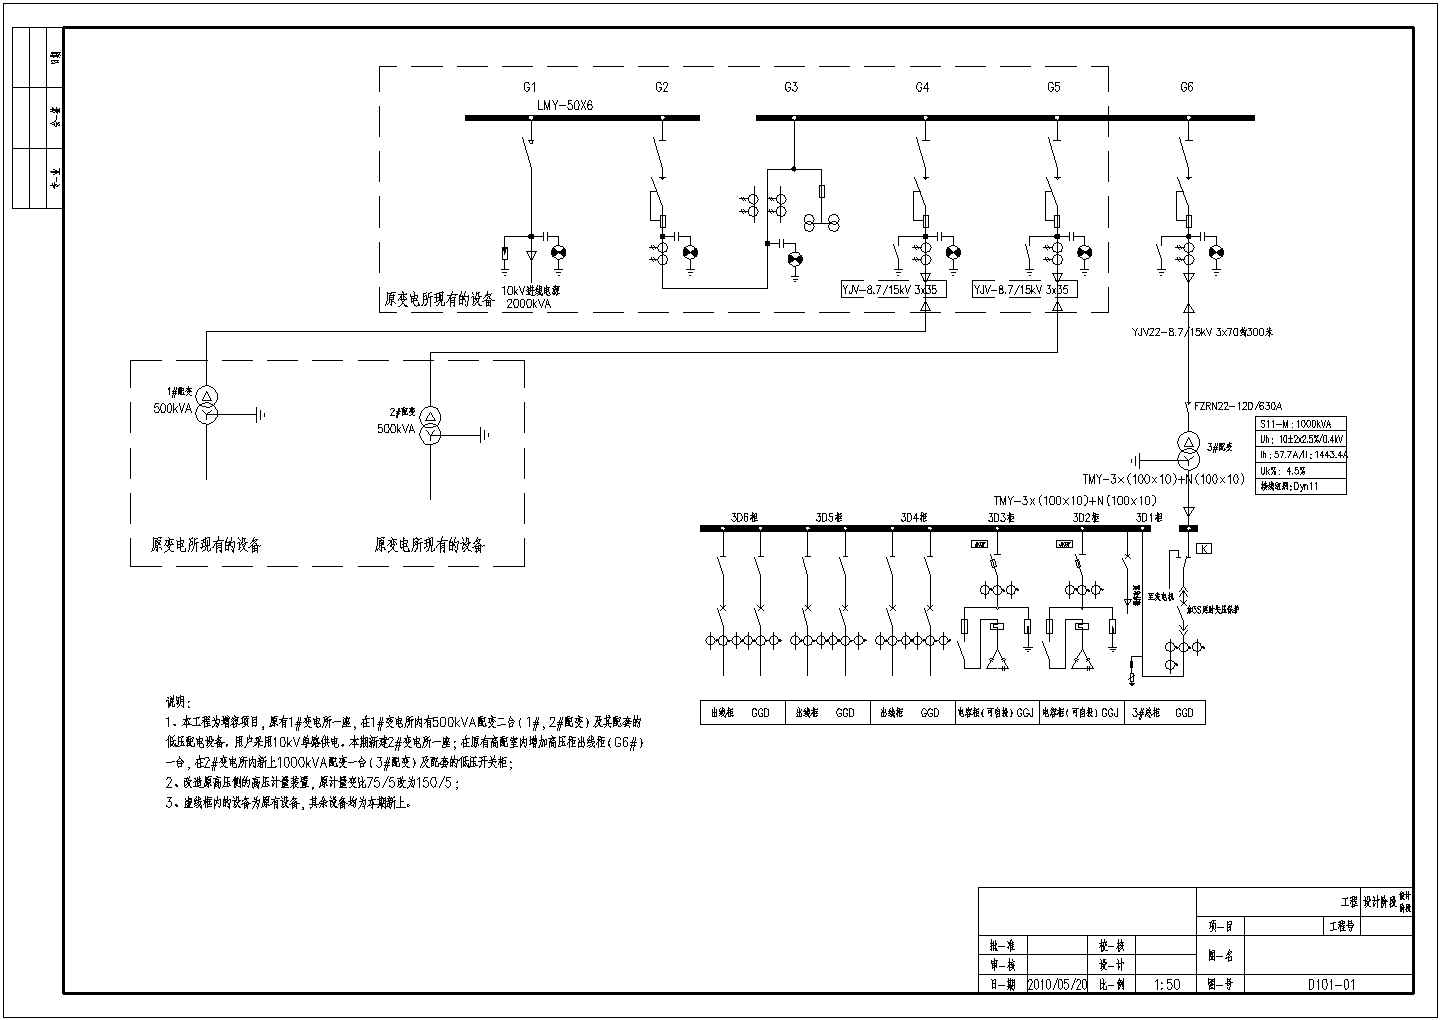 机电设备公司的变电所电气设计施工图